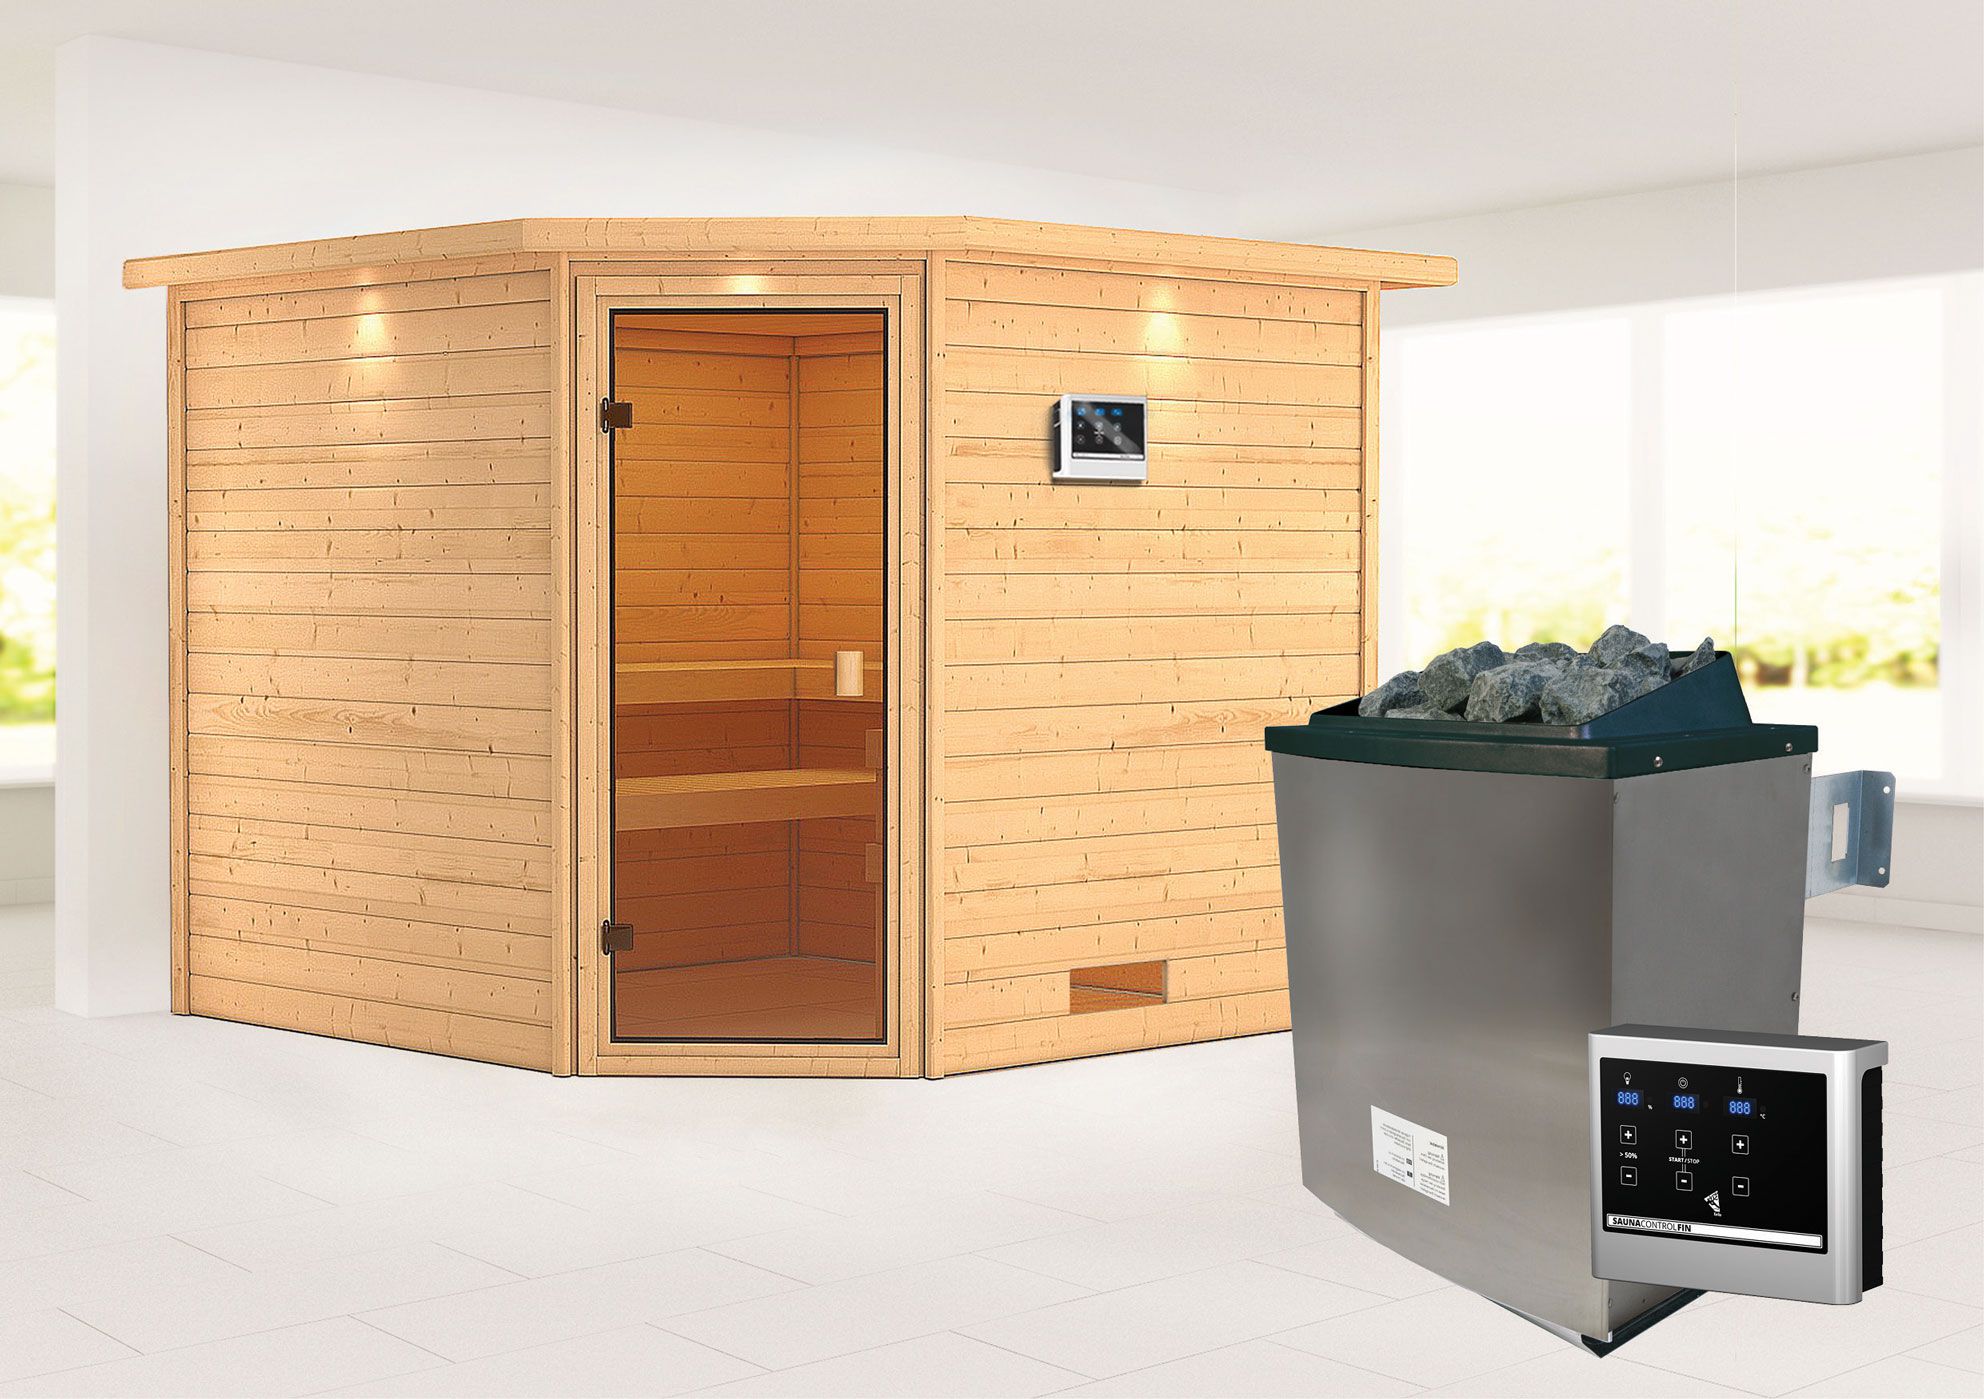 Sauna "Anesa" AKTION mit Kranz, bronzierter Tür und Ofen externe Steuerung easy 9 KW - 259 x 245 x 202 cm (B x T x H)